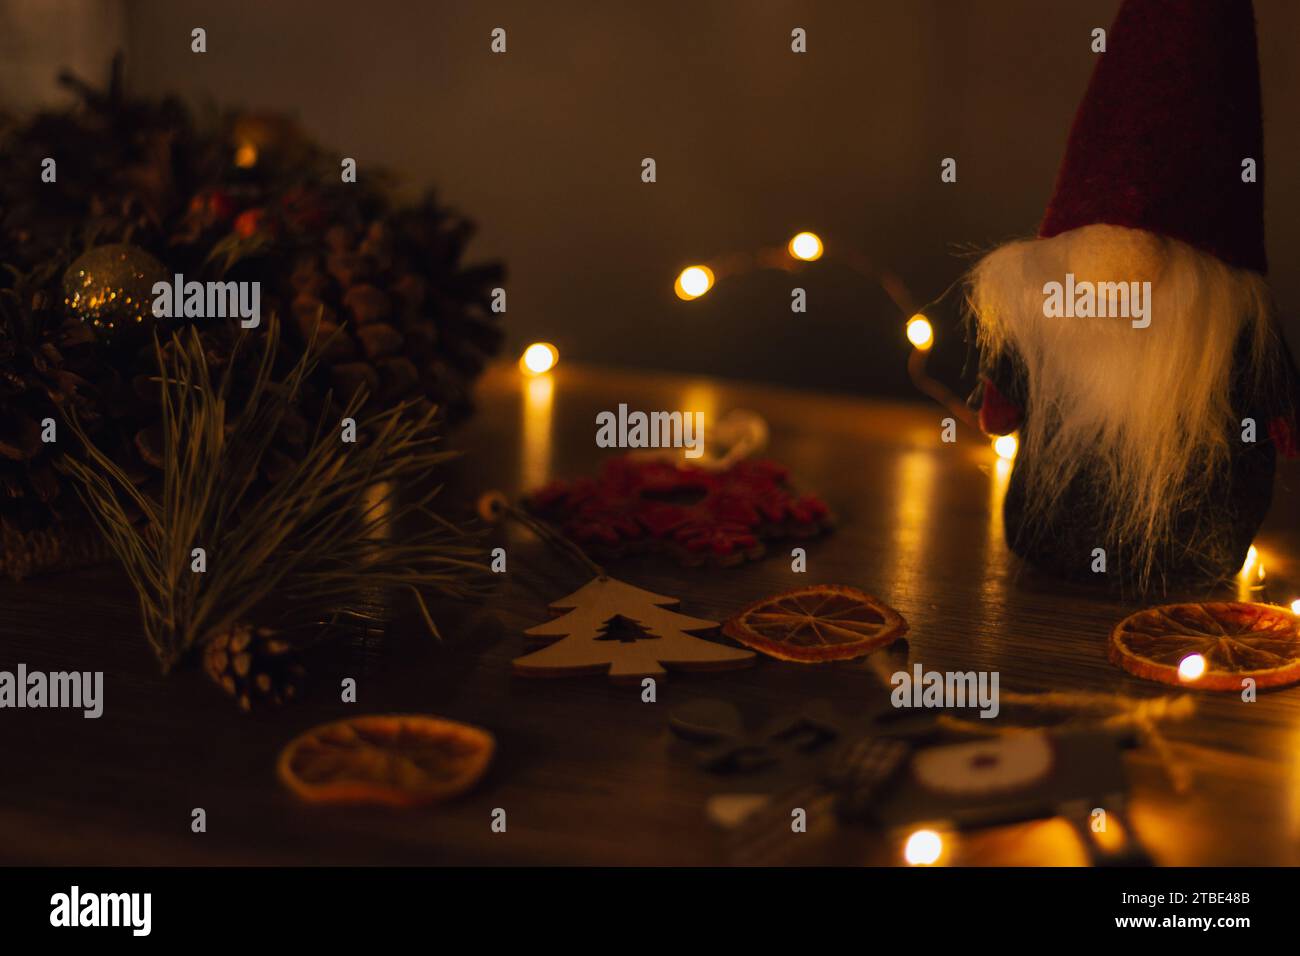 Weihnachtskranz mit Spielzeug, getrockneten Orangenfrüchten und festlichen Lichtern. Adventsdekoration. Silvesterfeier. Weihnachtskarte. Winterferien. Stockfoto